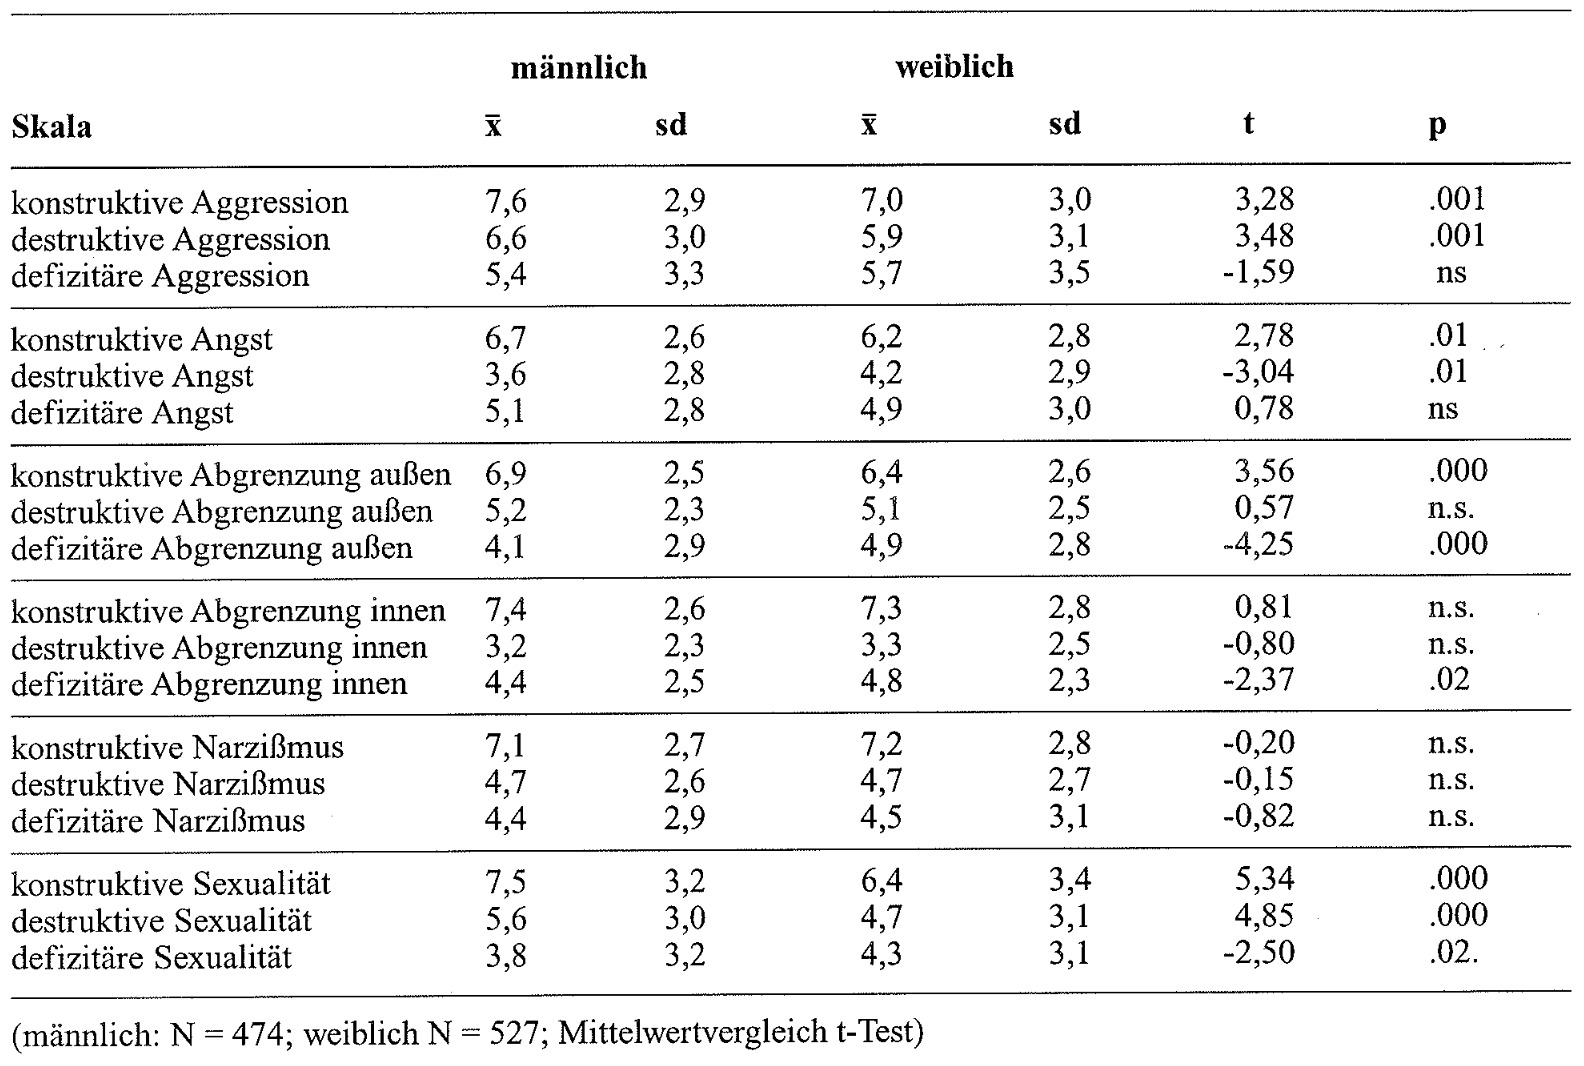 Tabelle 3: Geschlechtsspezifische Unterschiede im ISTA in der Eichstichprobe (männlich: N = 474; weiblich N = 527, Mittelwertvergleich t-Test)